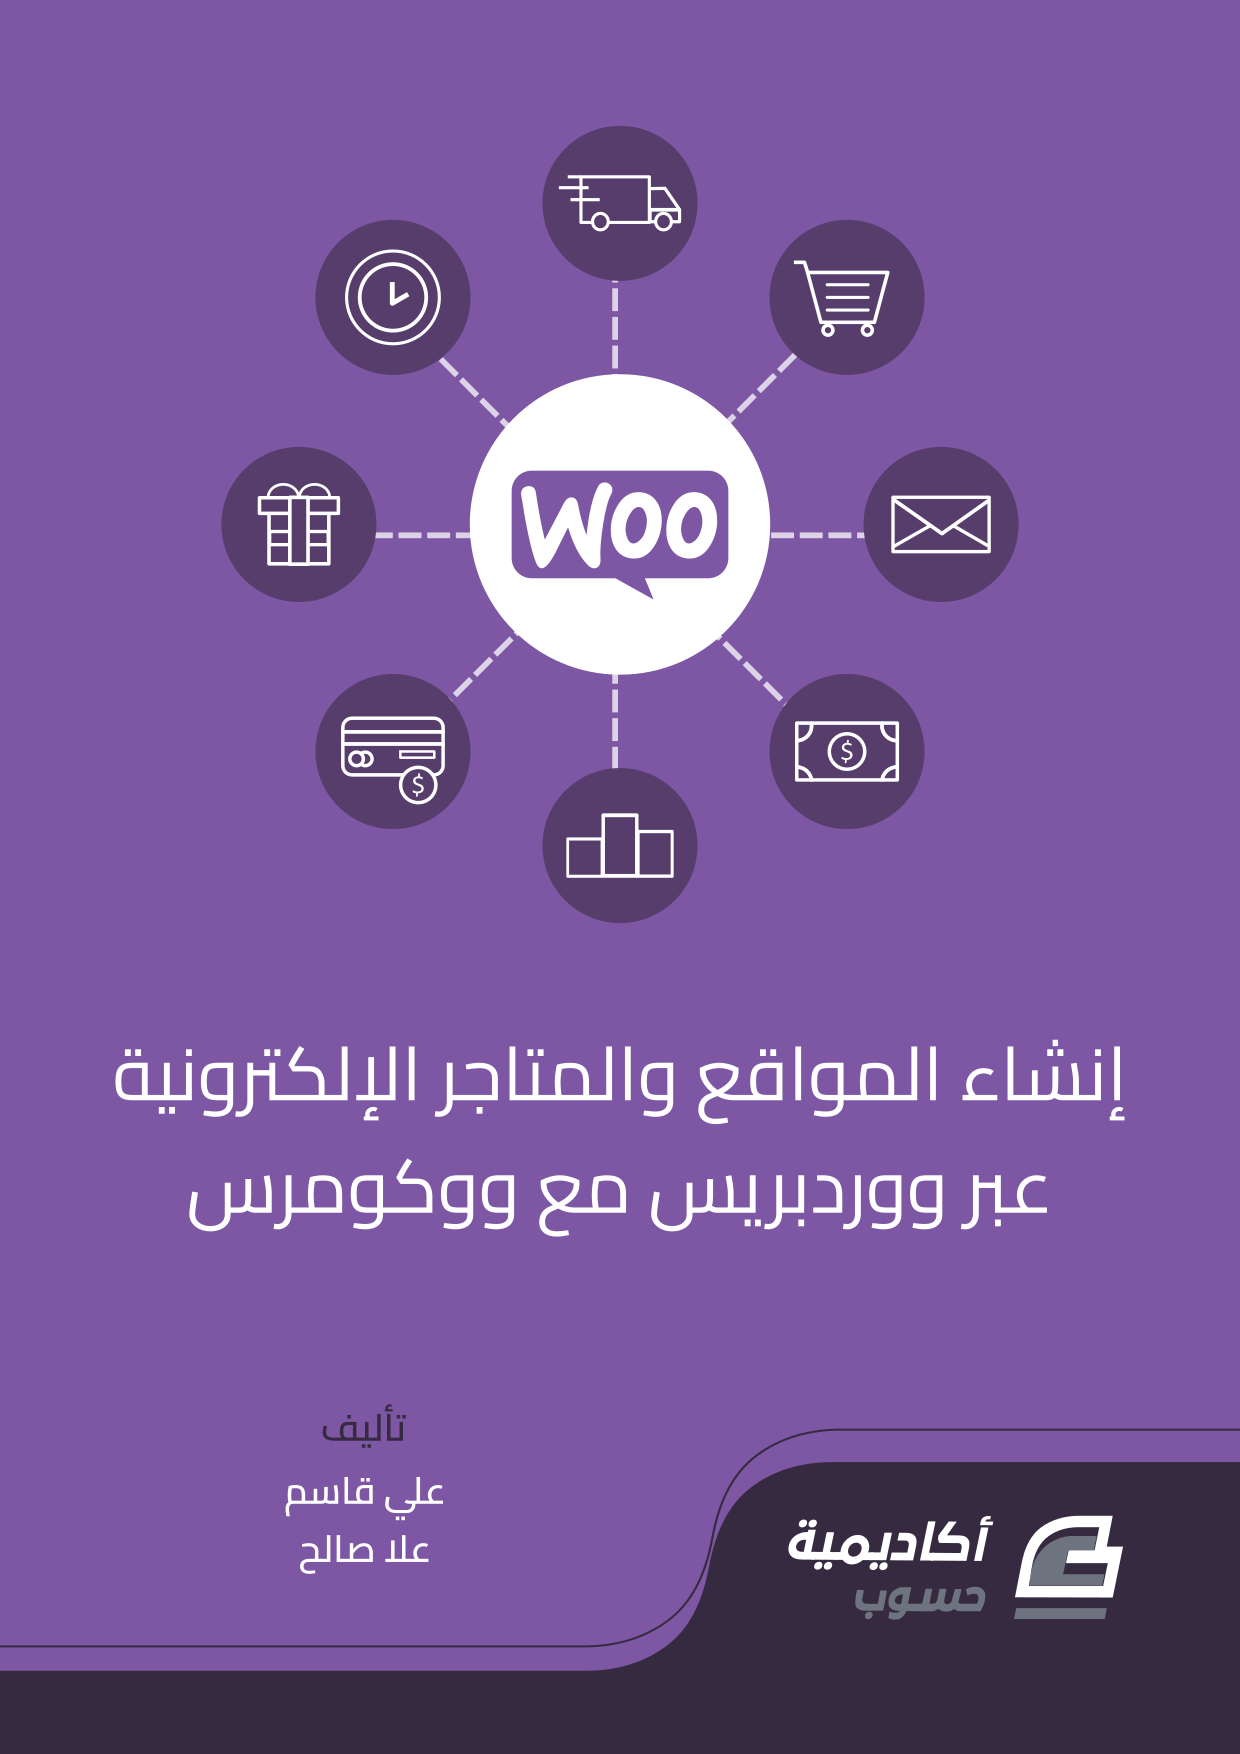 مزيد من المعلومات حول "إنشاء المواقع والمتاجر الإلكترونية عبر ووردبريس مع ووكومرس"